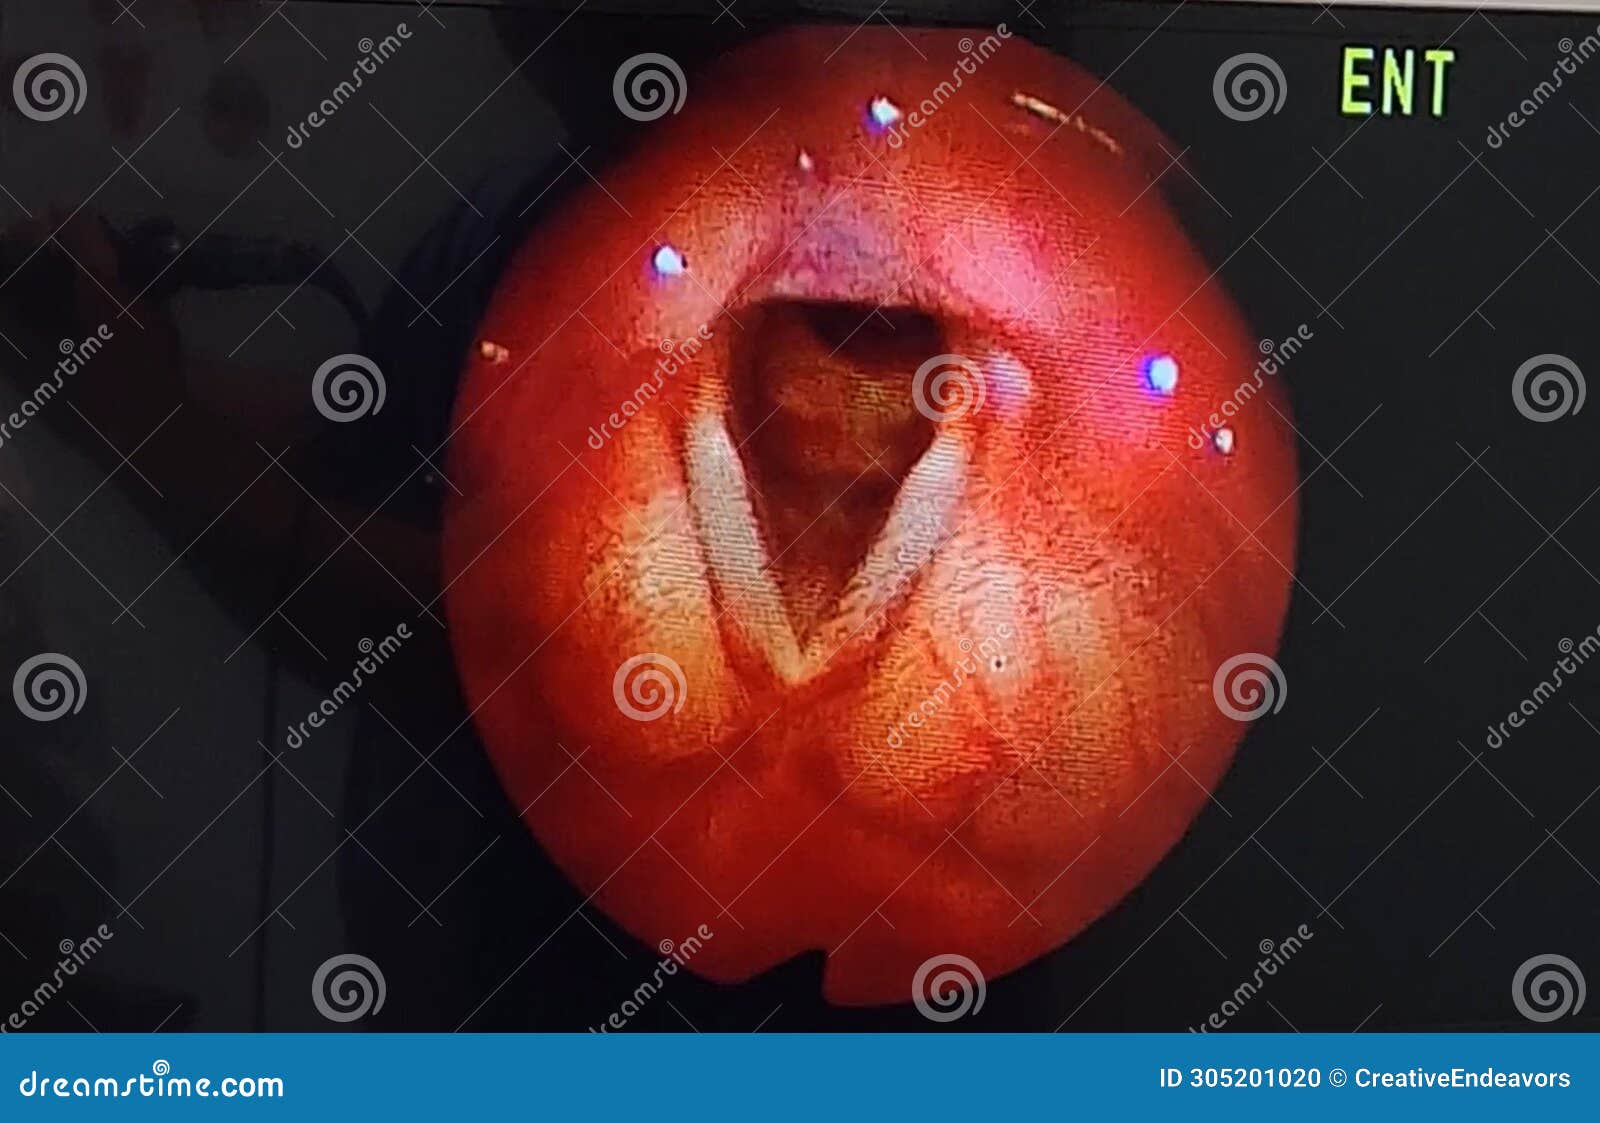 arytenoids, vocal cords as seen through laryngoscope